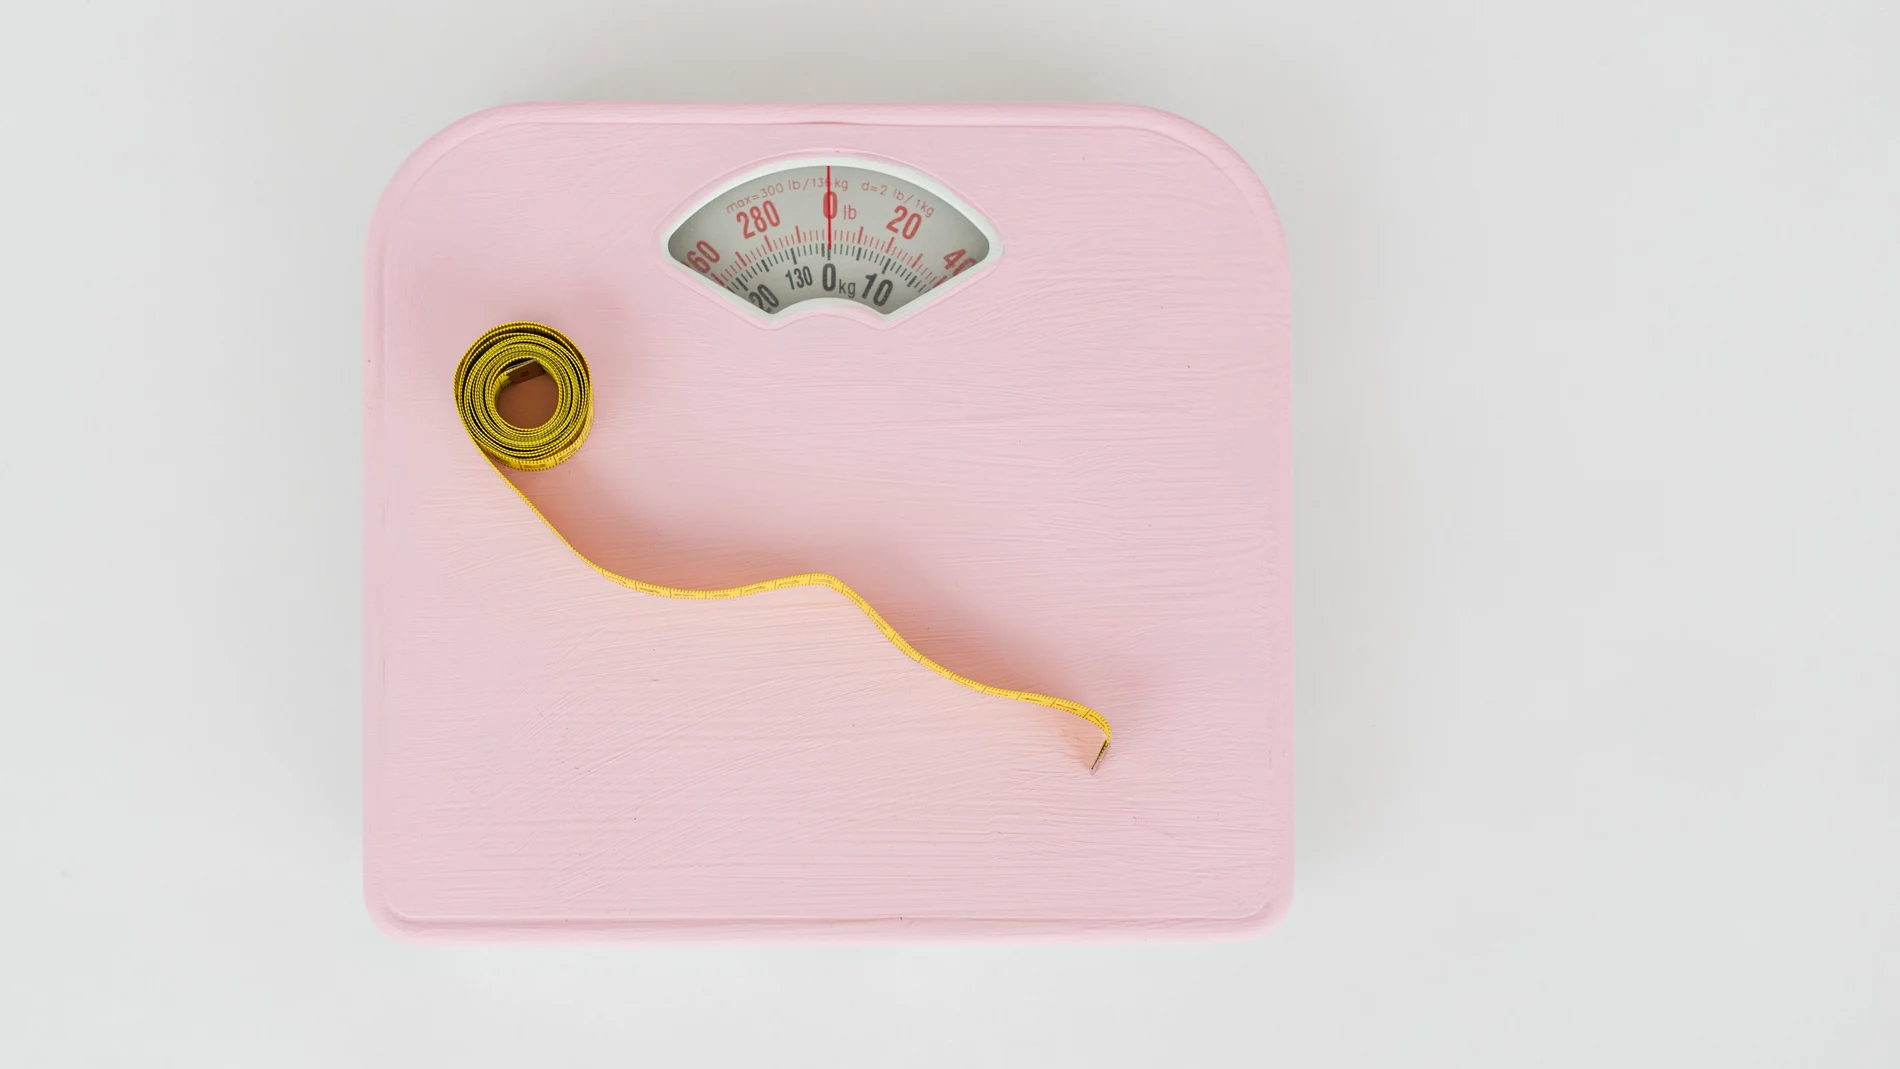 Adiós a las dietas: 10 hábitos para perder peso de manera saludable